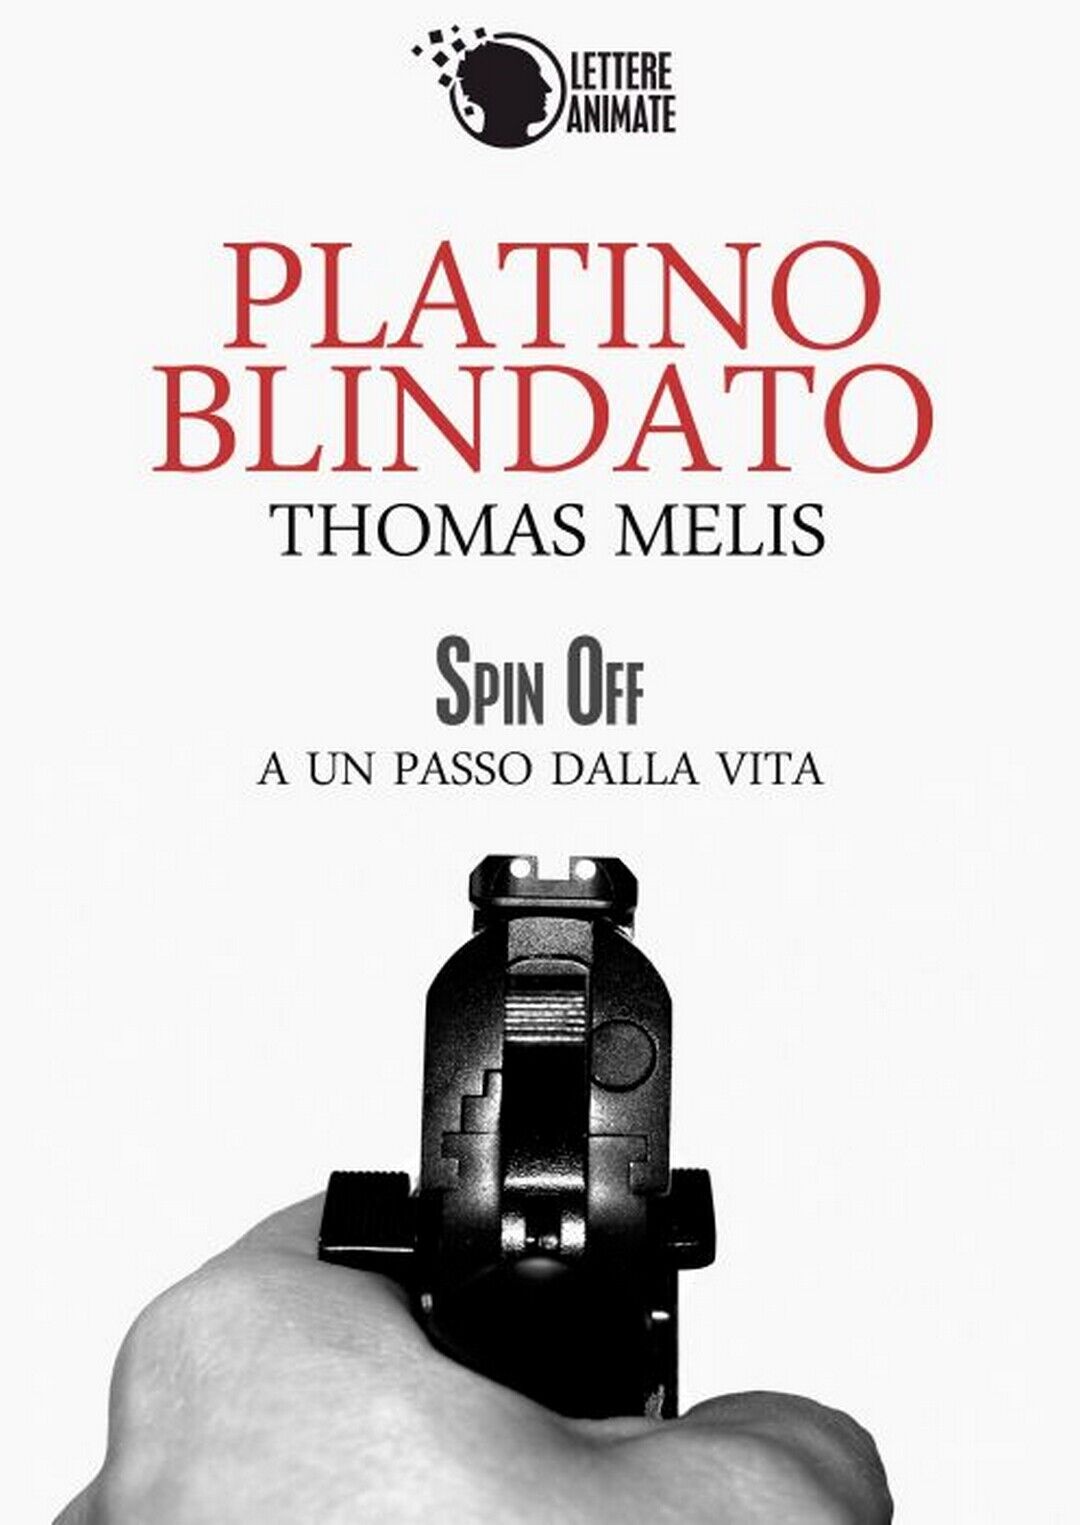 Platino blindato - spin off  di Thomas Melis,  2016,  Lettere Animate Editore